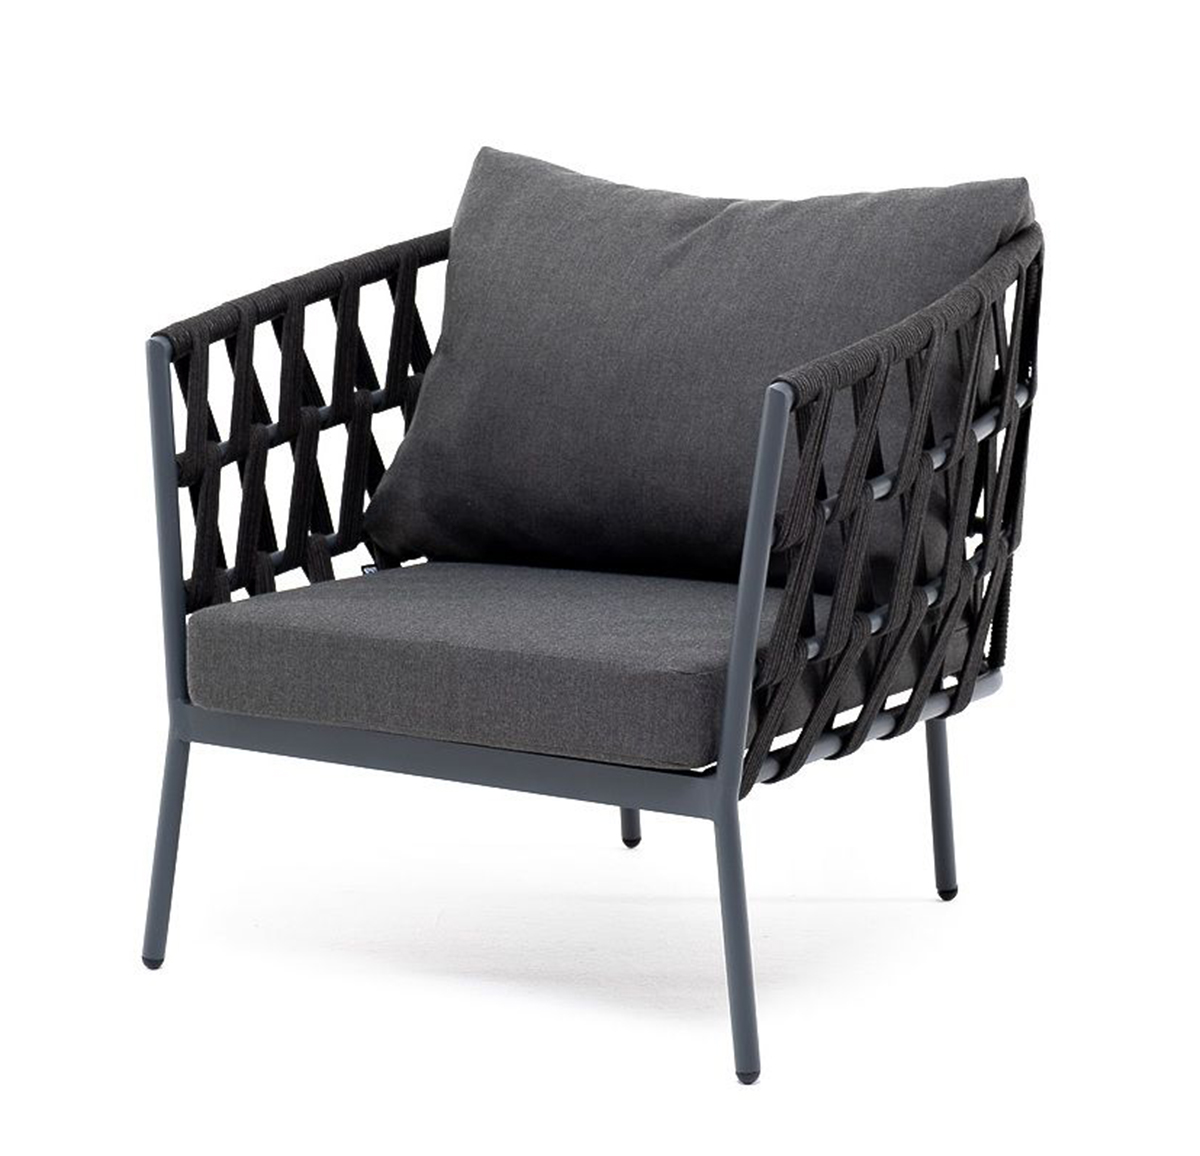 Плетеное кресло Диего из роупа темно-серое кресло плетеное из роупа канны темно серый ткань savana grafit